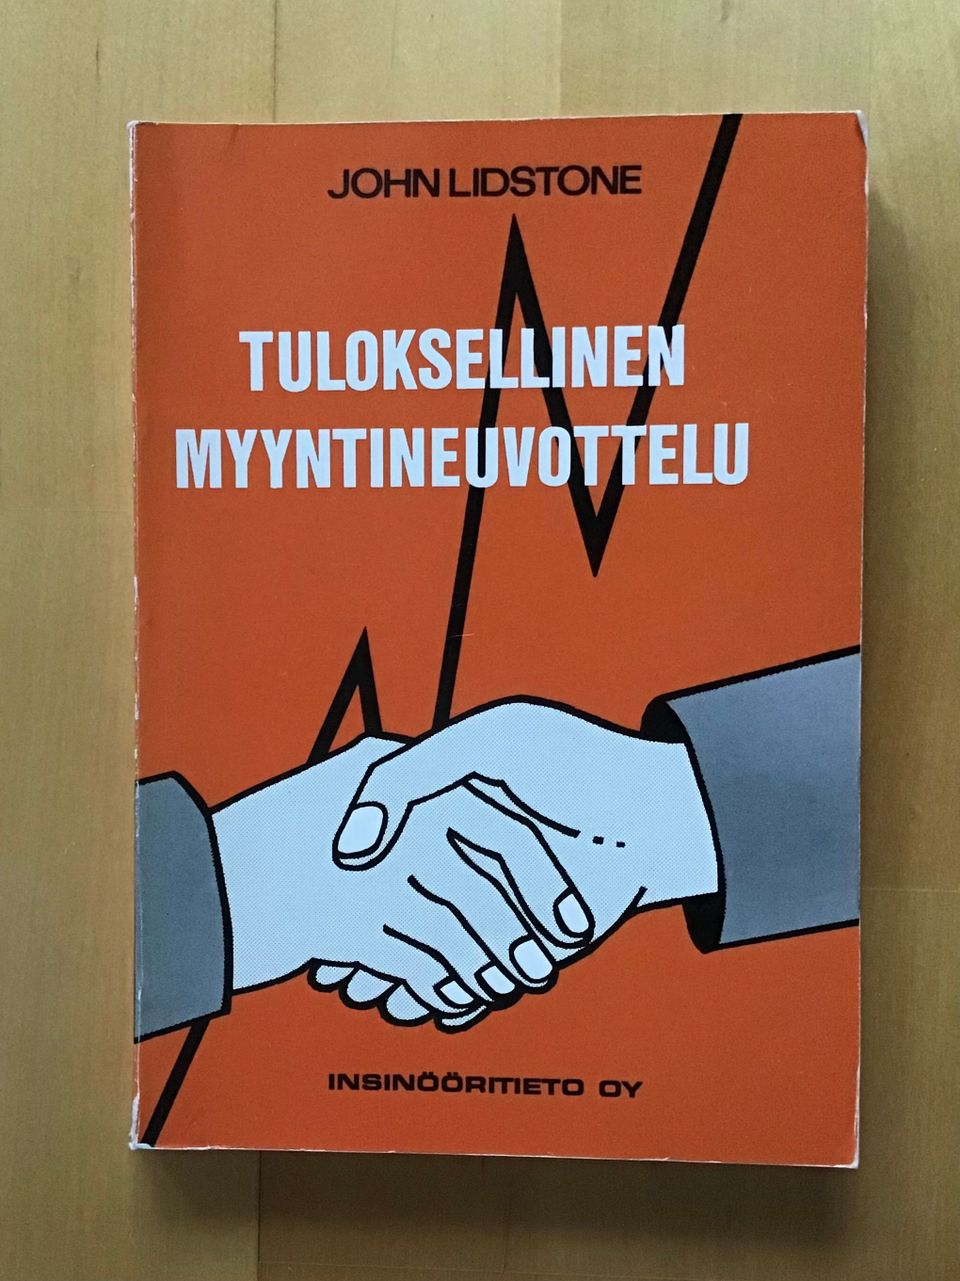 John Lidstone : Tuloksellinen myyntineuvottelu ( 1982 )